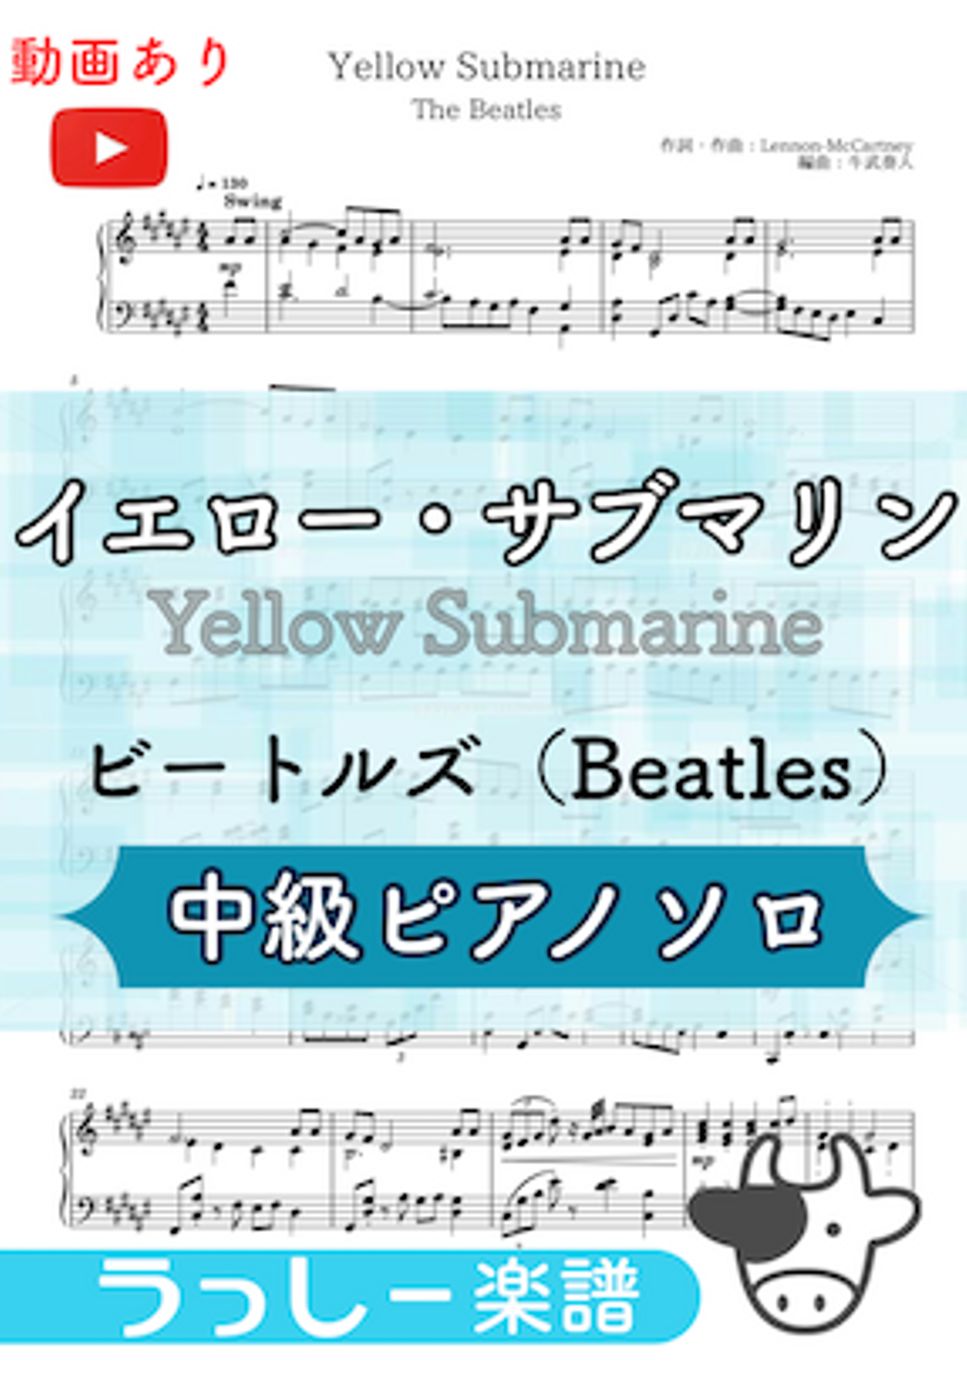 ビートルズ - イエロー・サブマリン (yellow submarine / Beatles) by 牛武奏人